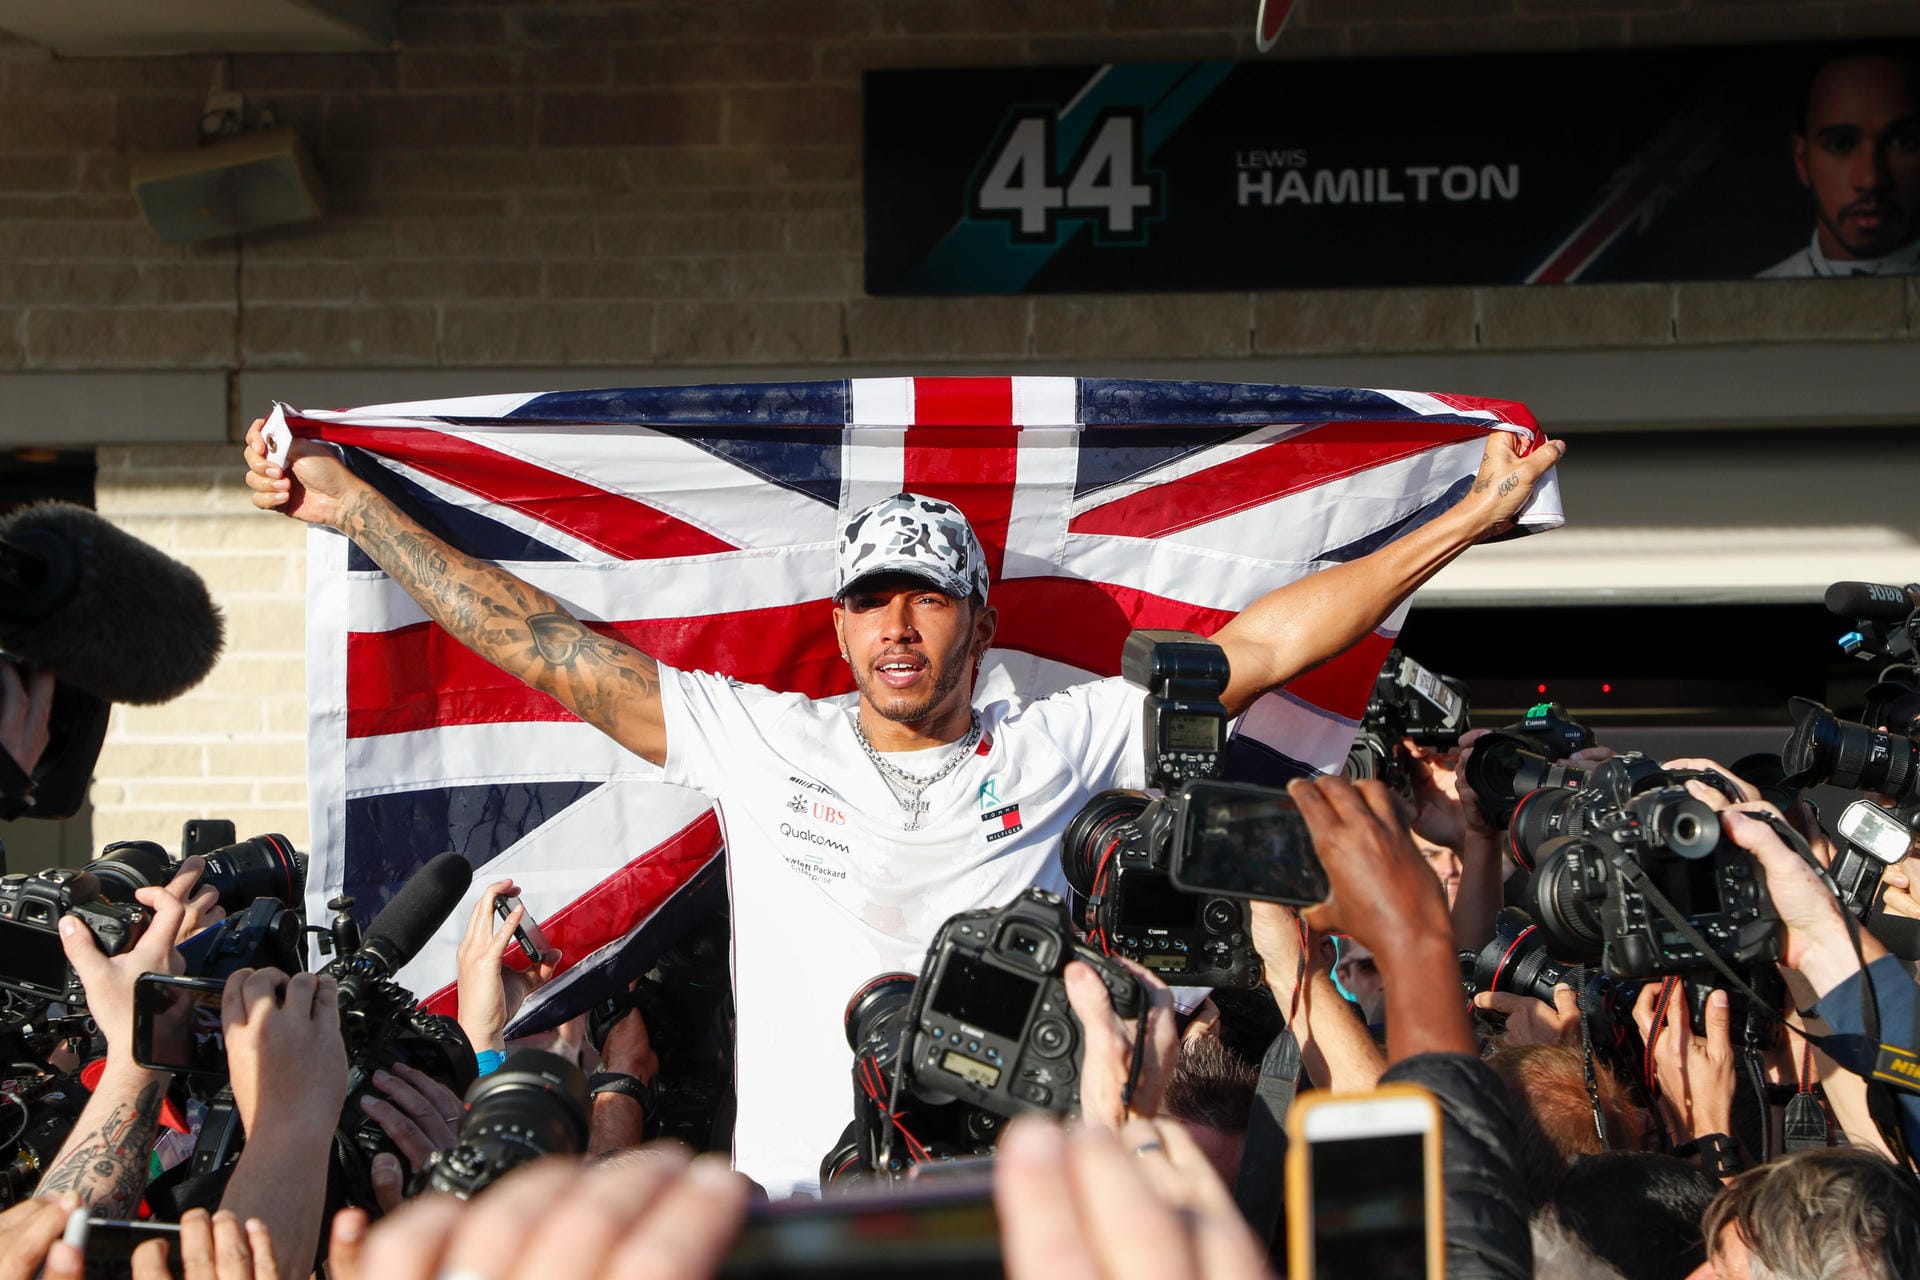 Am Sonntag gewann Lewis Hamilton seinen sechsten WM-Titel und avancierte damit zum zweiterfolgreichsten Formel-1-Fahrer aller Zeiten. Vor ihm schafften es bereits eine Reihe von Piloten auf den Olymp des Motorsports. t-online.de stellt Ihnen die Weltmeister der letzten 20 Jahre vor.